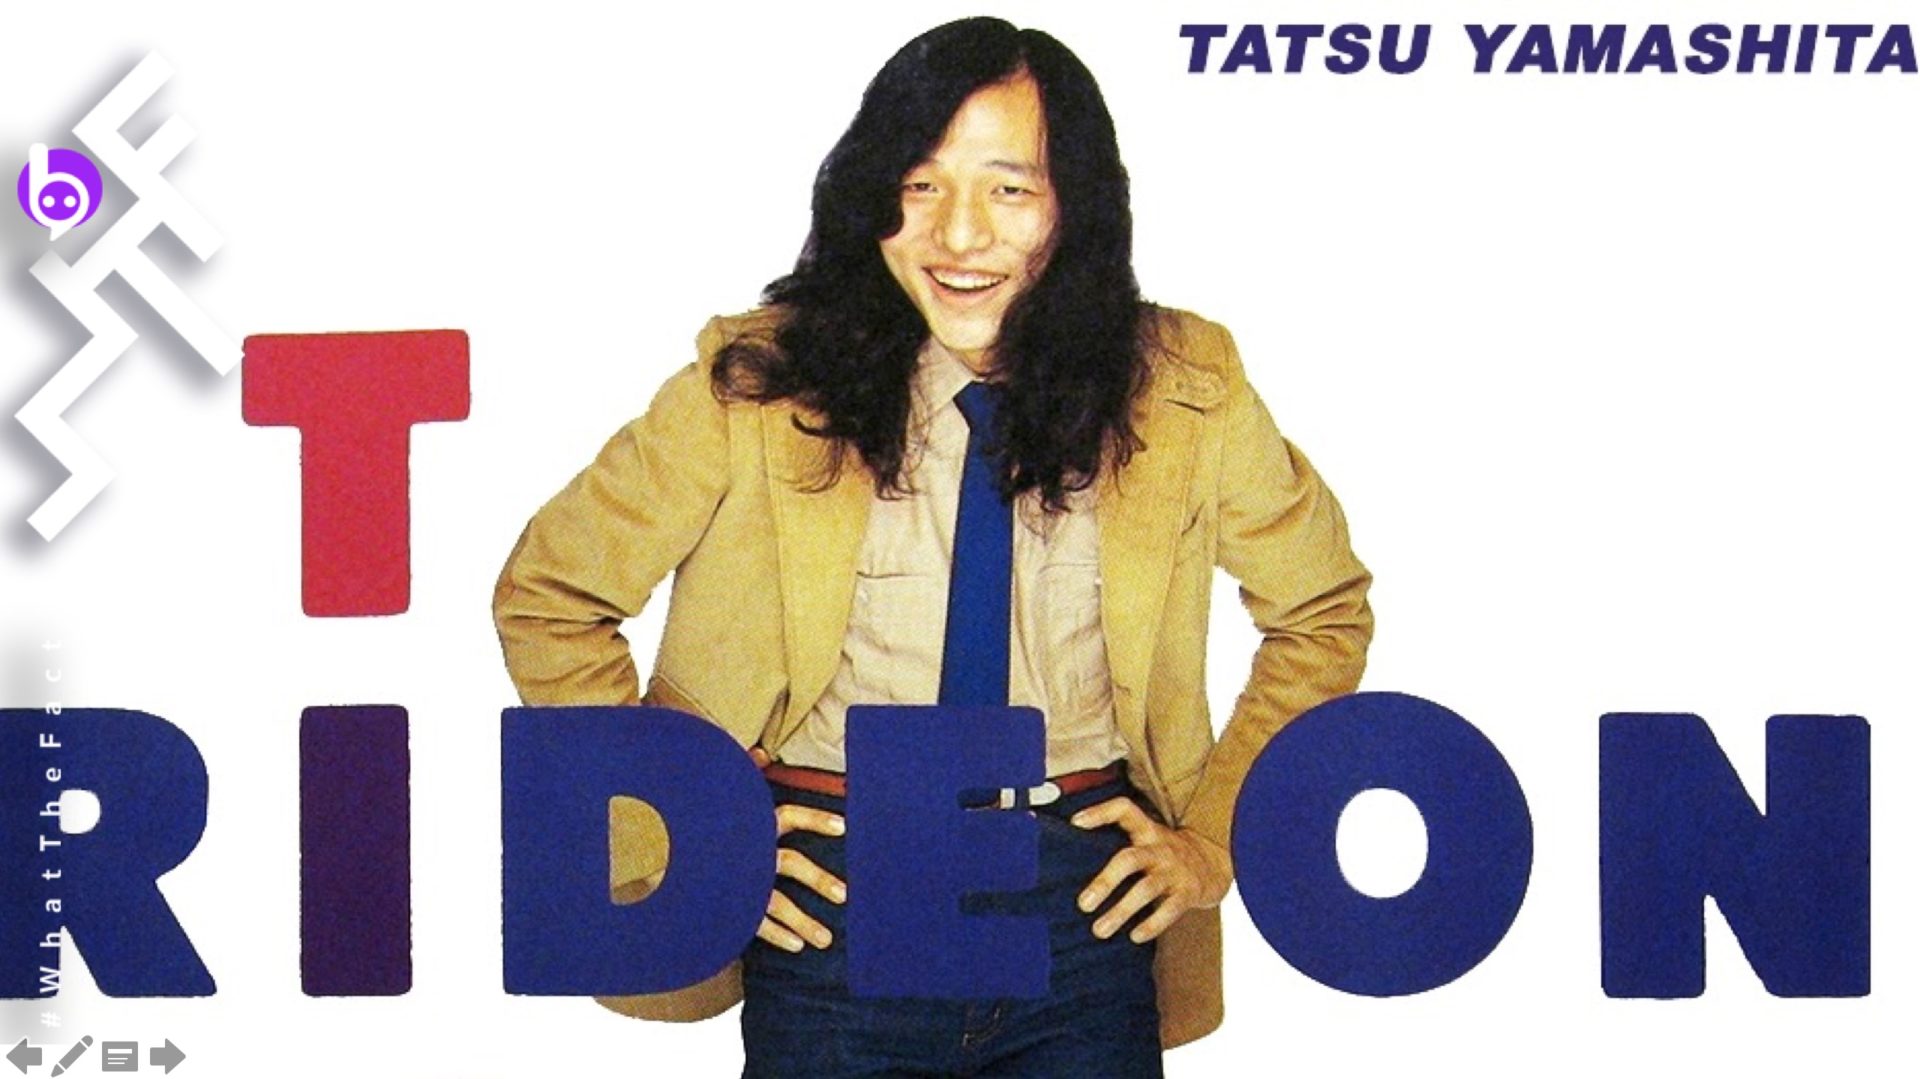 ครบรอบ 40 ปี !! ‘Ride on Time’ อัลบั้มสุดคลาสสิกของตัวพ่อแห่งวงการดนตรี City Pop ‘Tatsuro Yamashita’